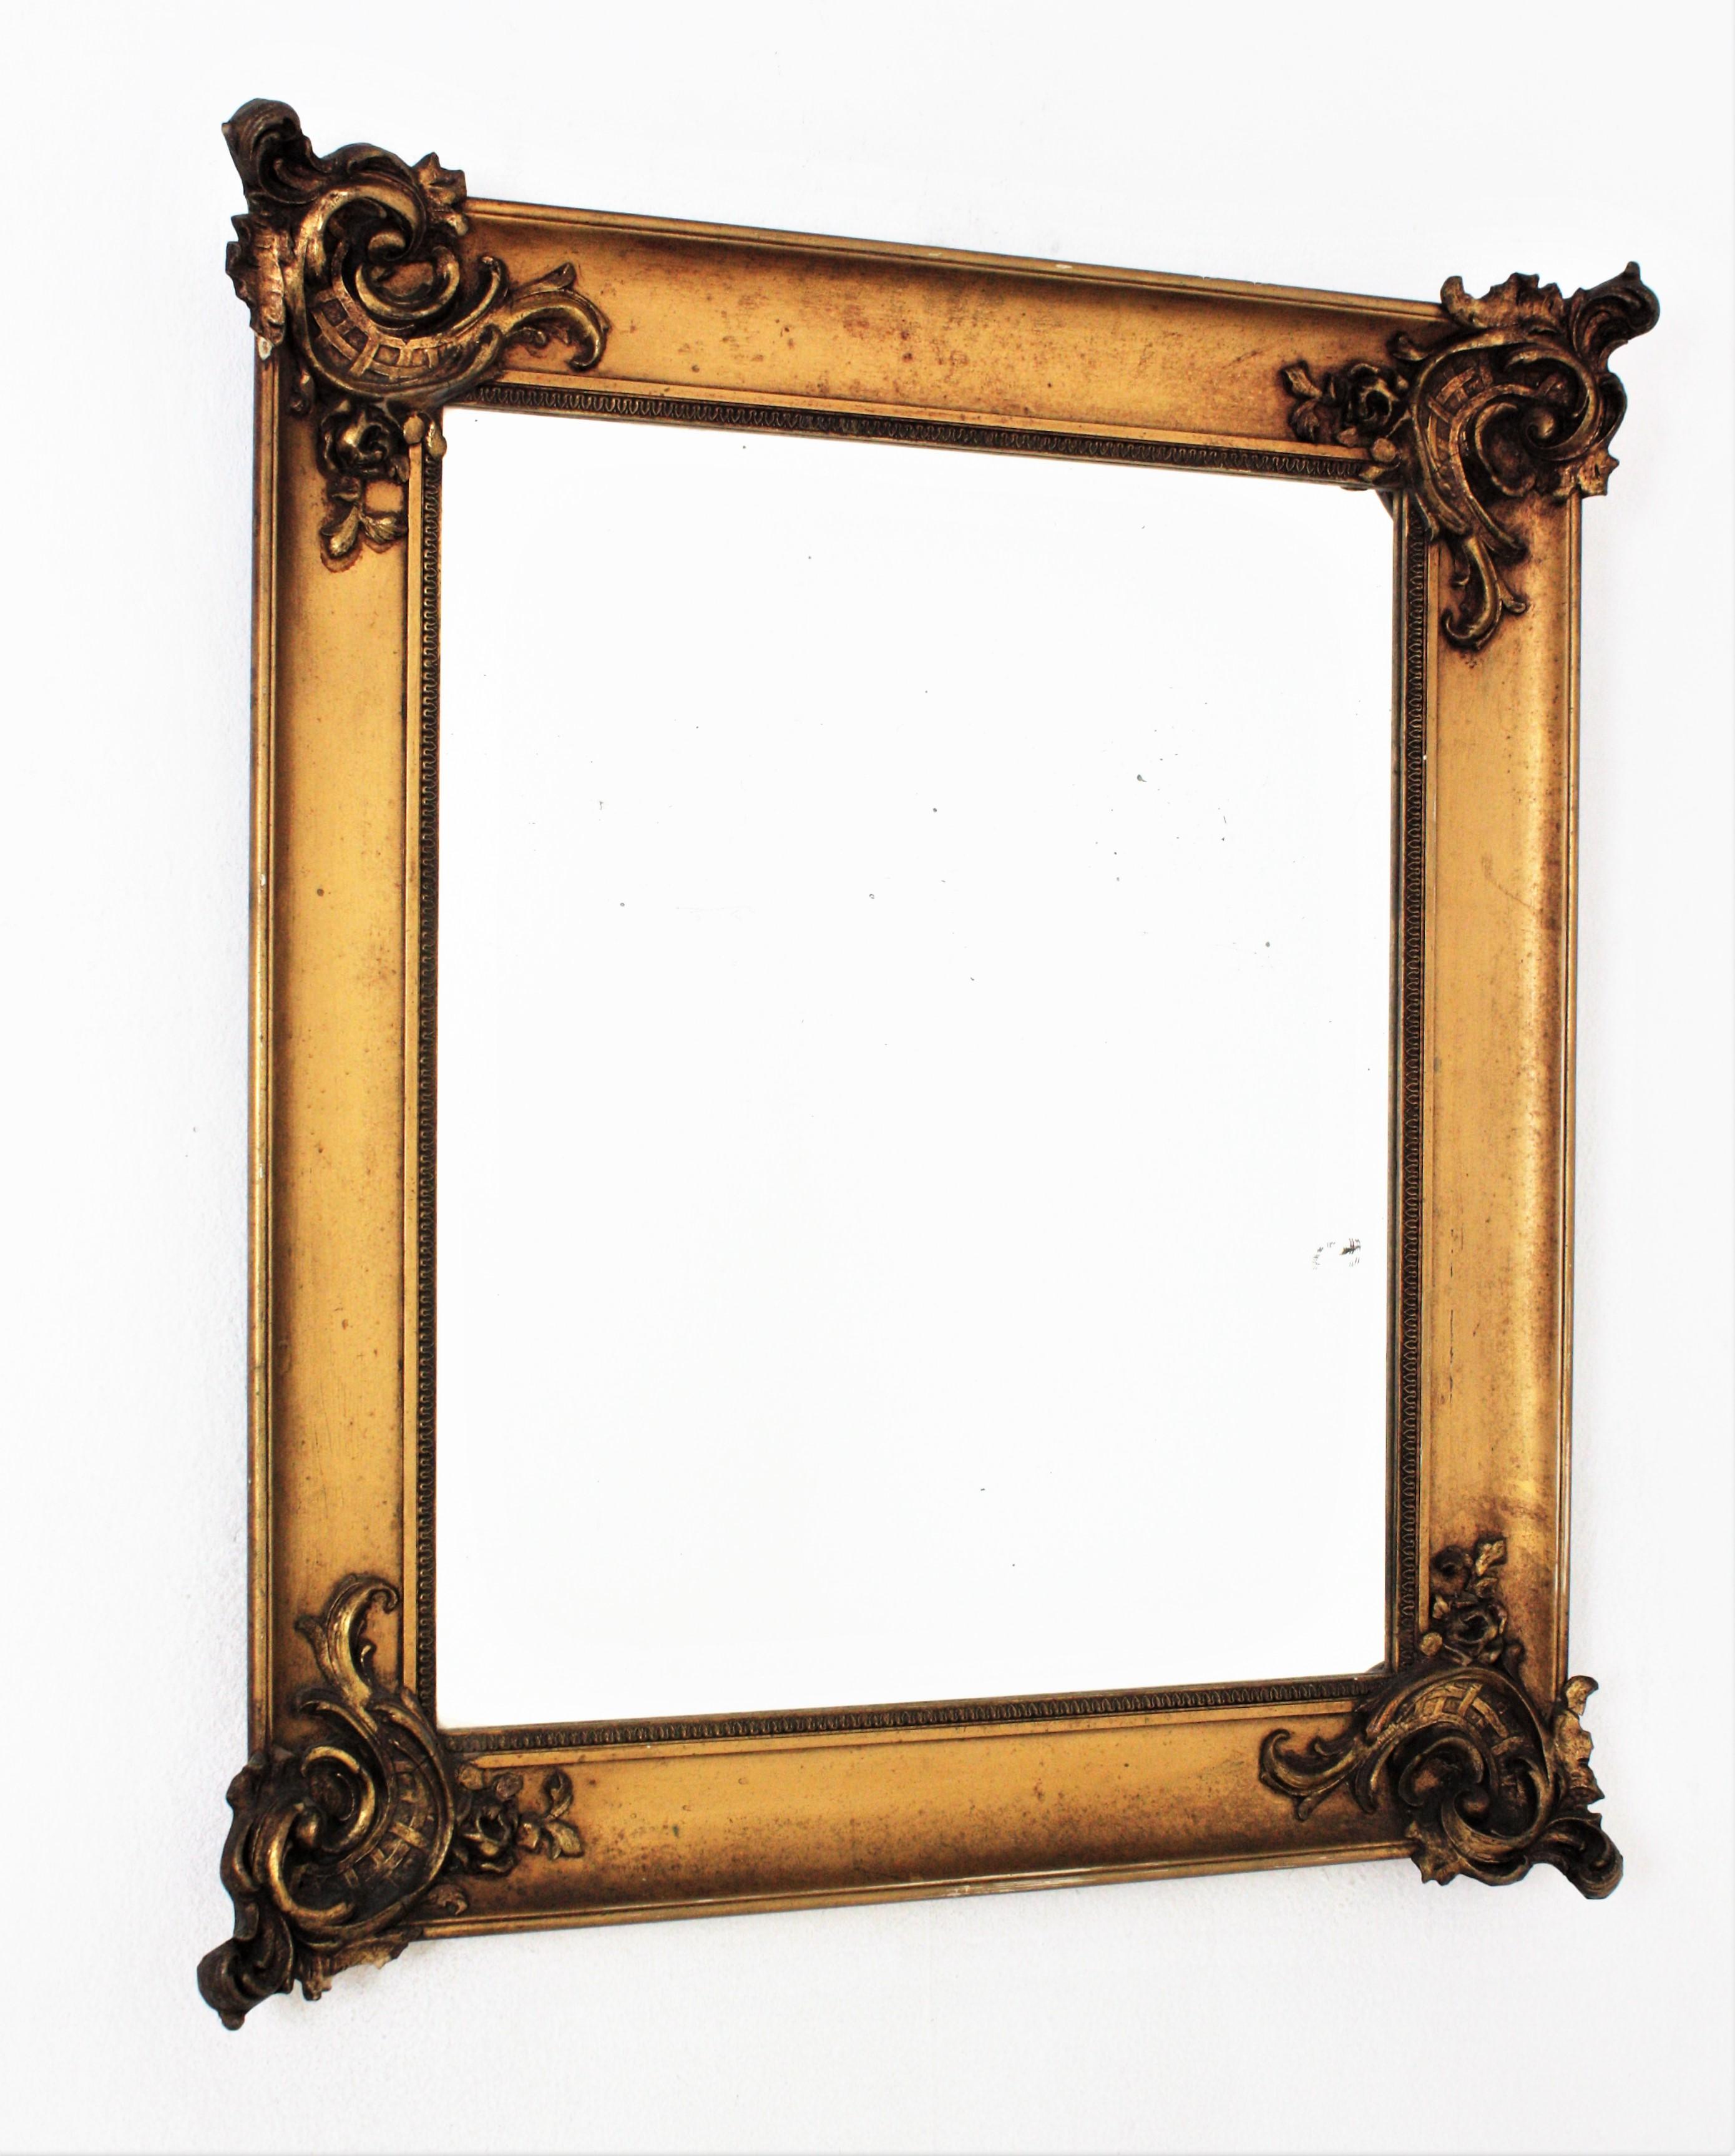 Louis XV-Stil Rechteckiger Spiegel, Frankreich, 1930er-1940er Jahre.
Schöner vergoldeter Wandspiegel mit Laubdekoration an den Ecken, im Stil von Louis XV
Maße: 80 cm H x 69 cm B x 9 cm T
Maße des Glases: 57,5 cm H x 47,5 cm B

Wir sind